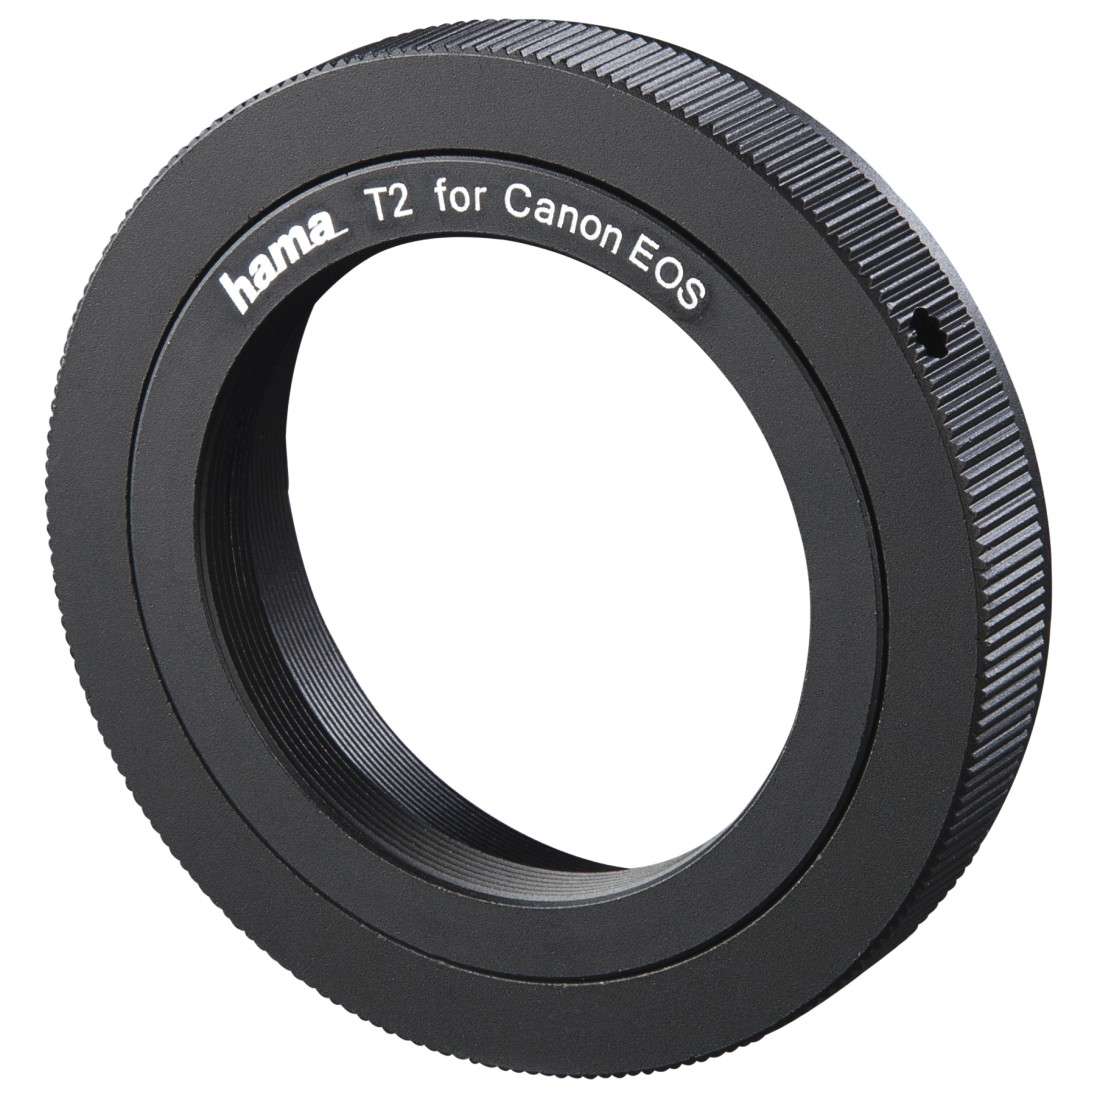 HAMA Objektiv- Adapter mit T2 Anschluss für Canon EOS Kameras